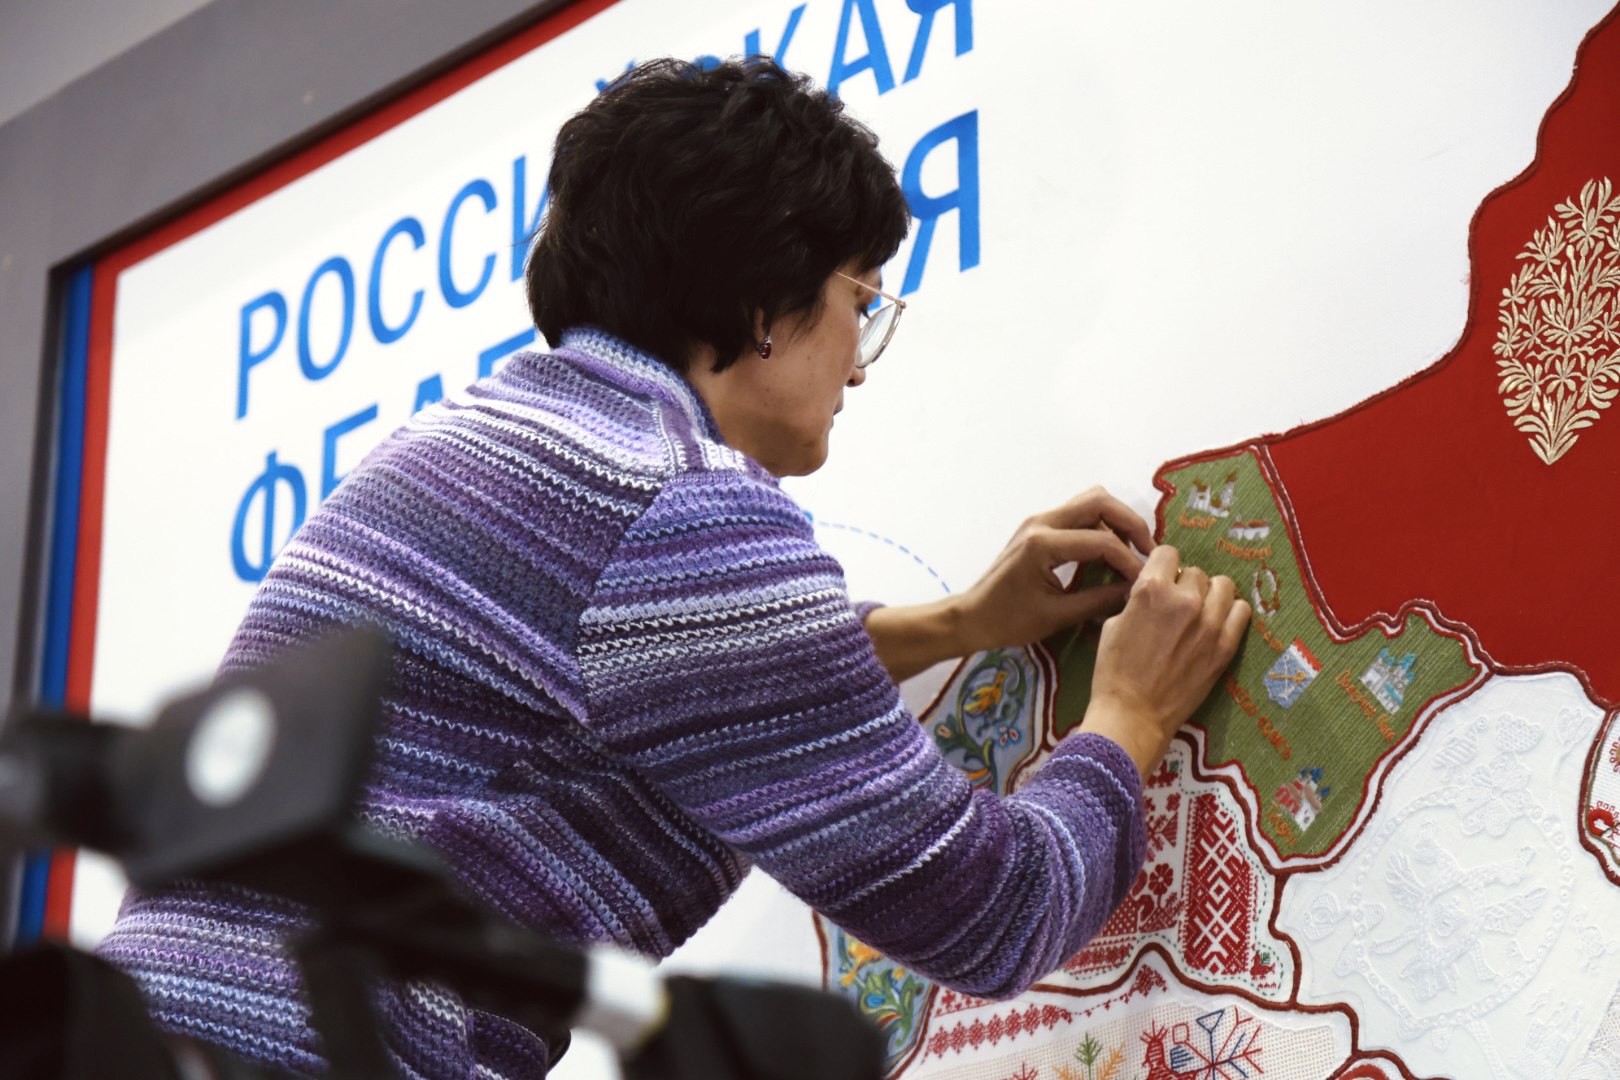 Российский этнографический музей представил вышитую карту Петербурга на выставке «Россия»3